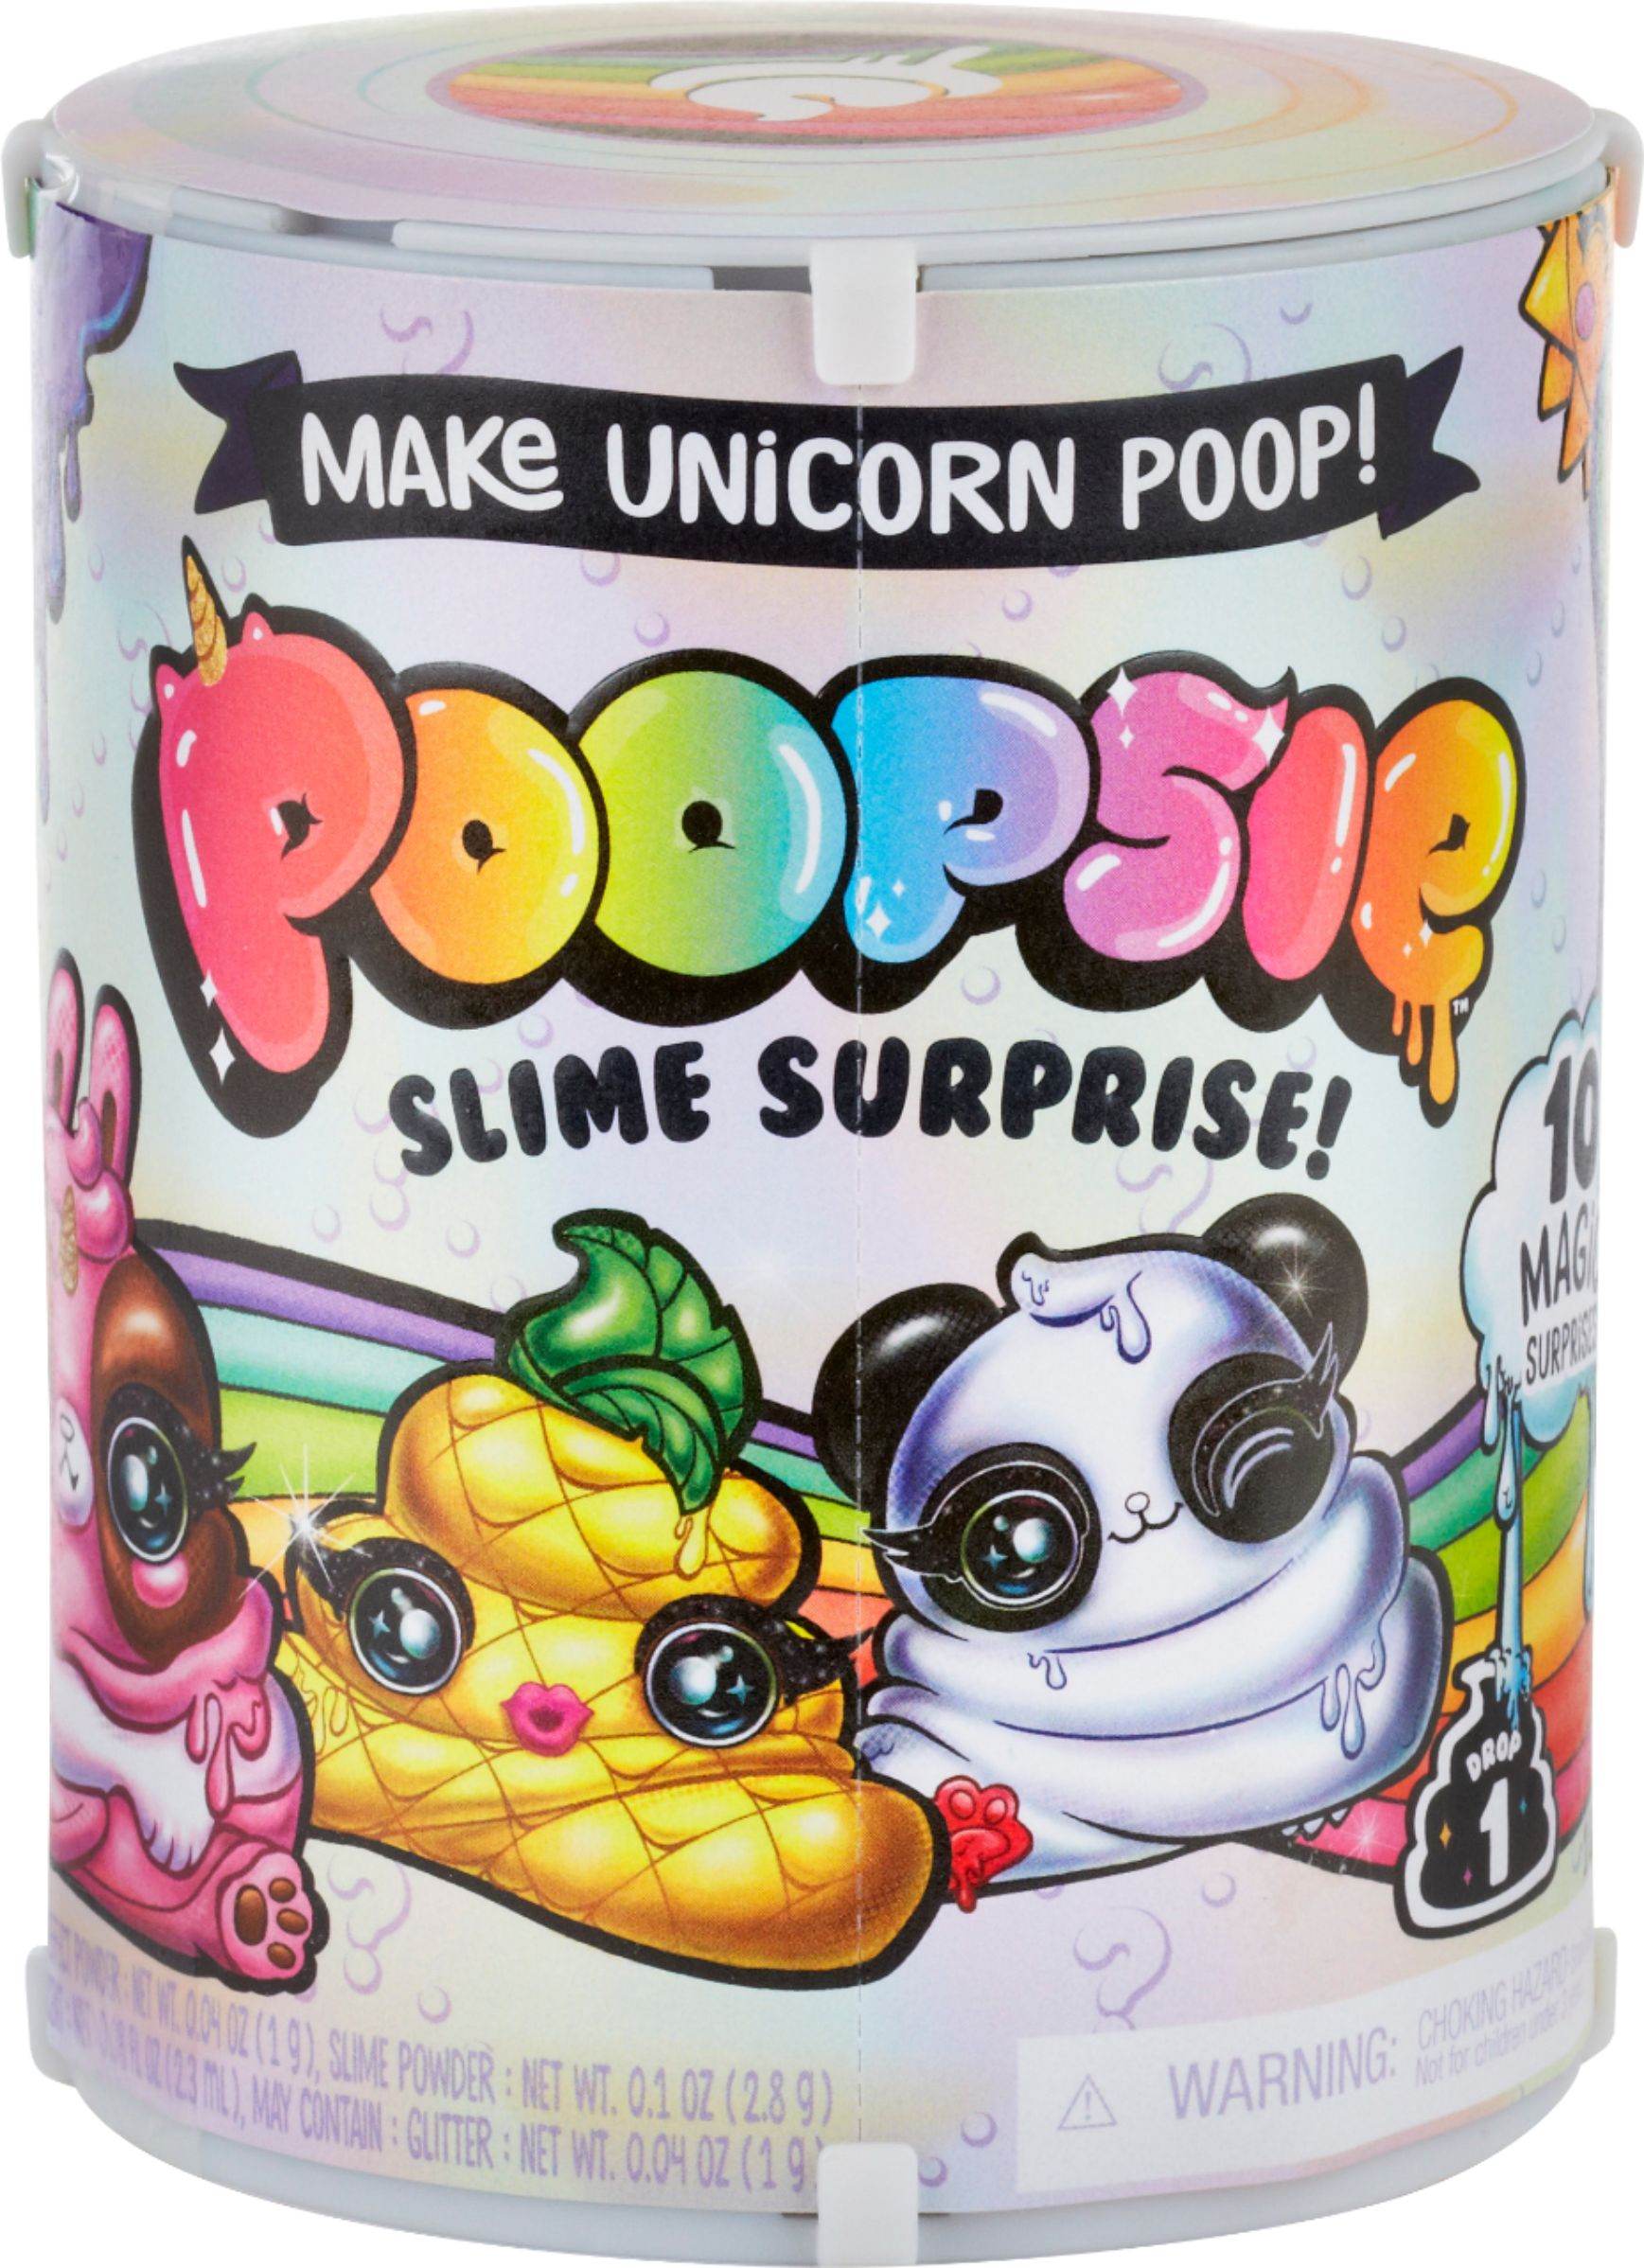 2019 Kreative Spielwaren Poopsie Slime Unicorn Surprise Pack Series Toy New DE 